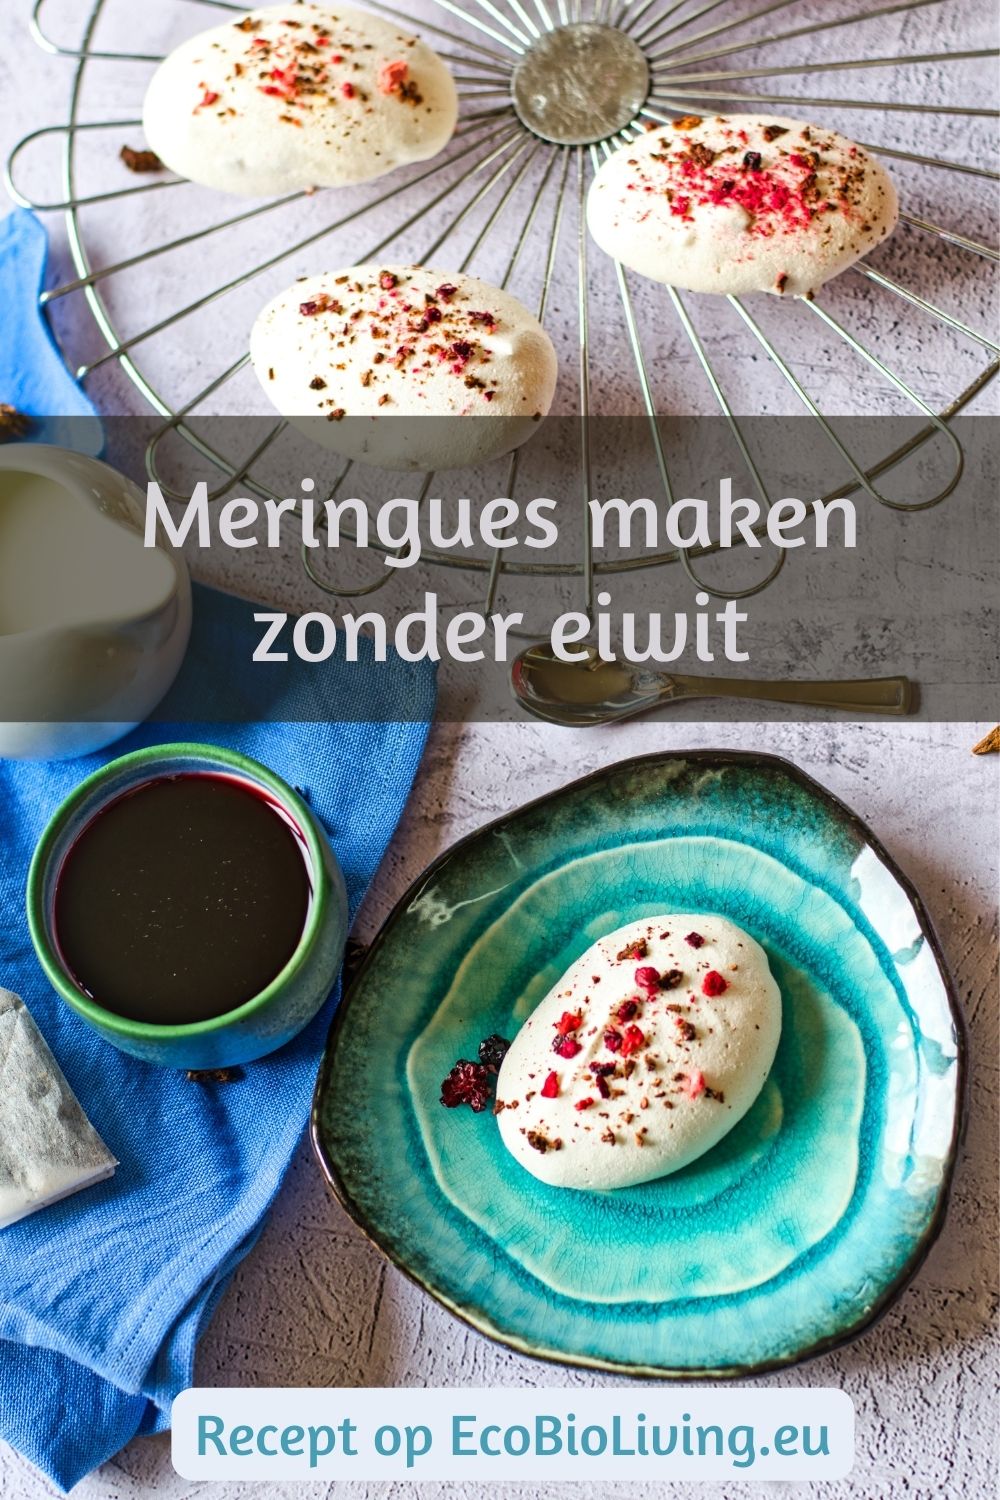 Pin met tekst: Meringues maken zonder eiwit - foto van zelfgemaakte meringue op aquakleurig bordje